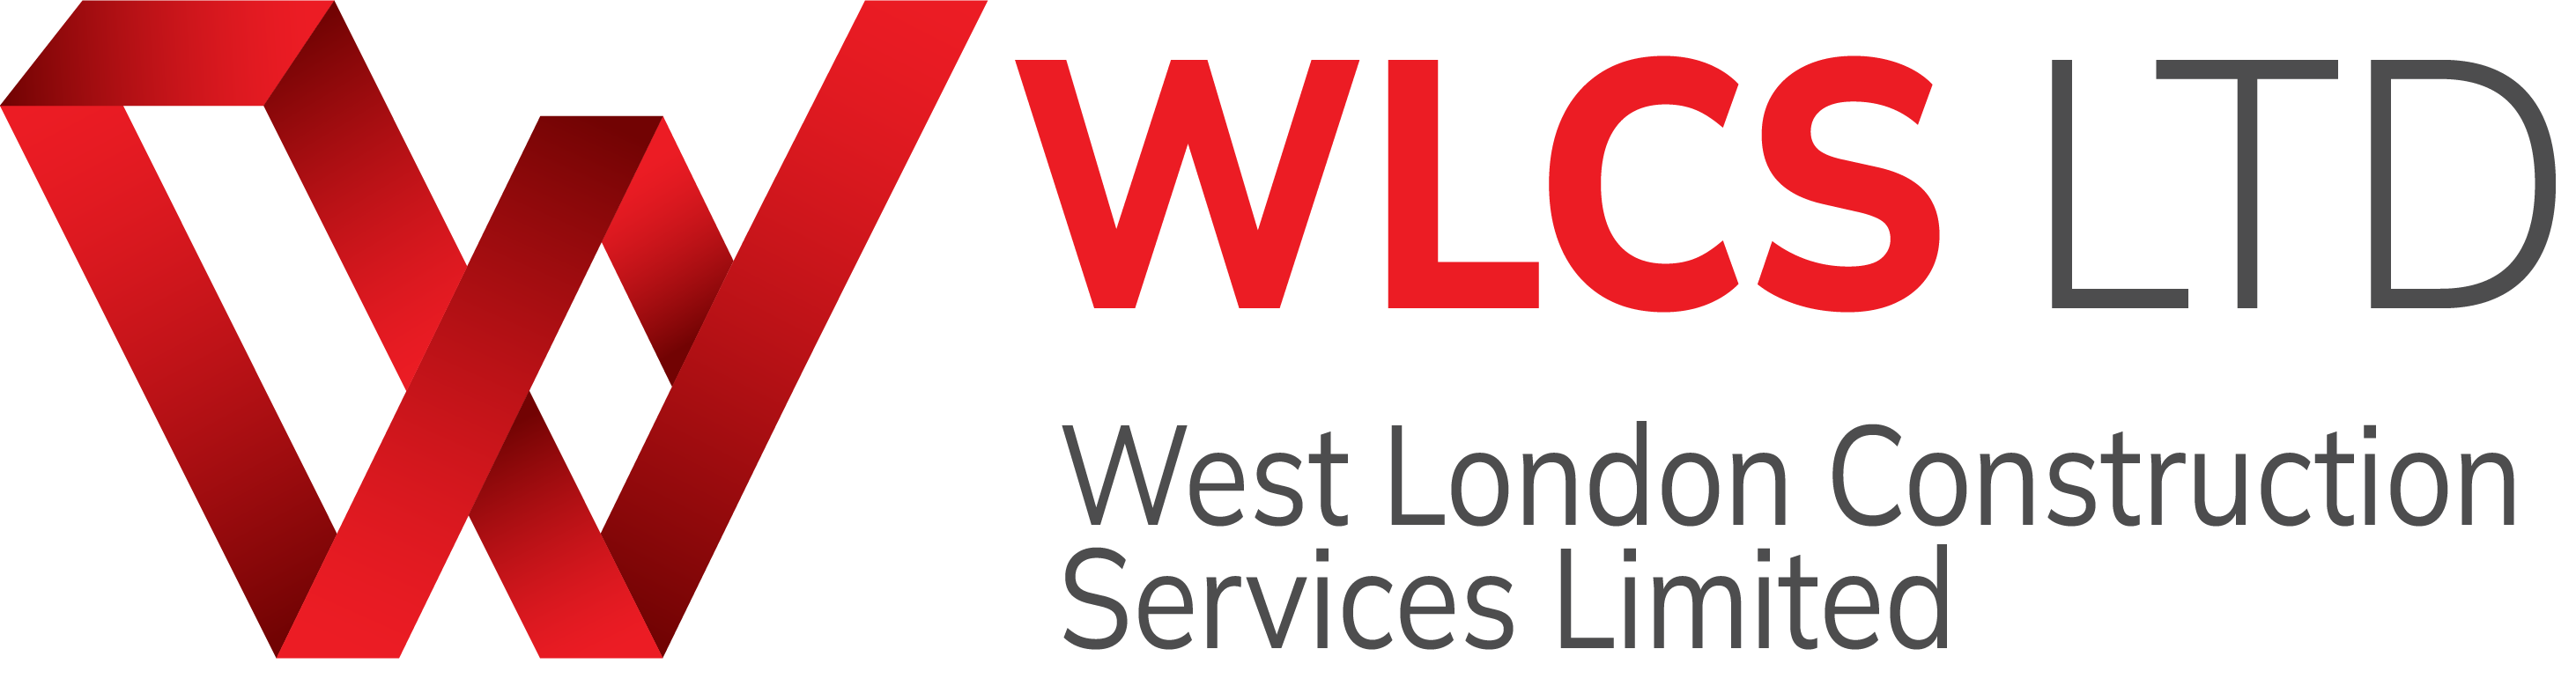 West London Construction Services Ltd